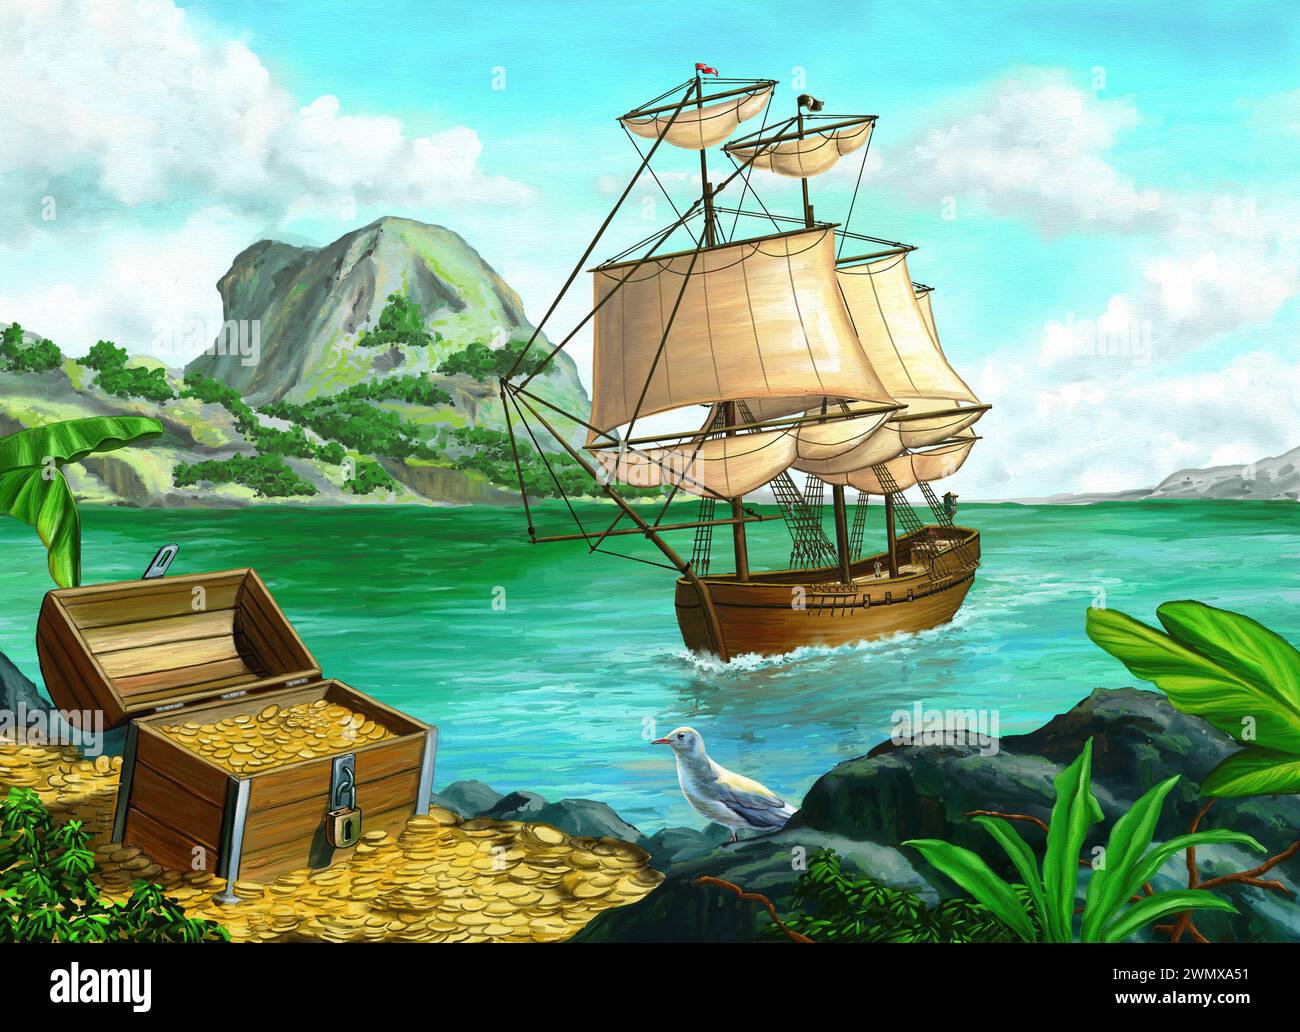 Trésor de pirate sur une île tropicale. Peinture numérique originale. Banque D'Images